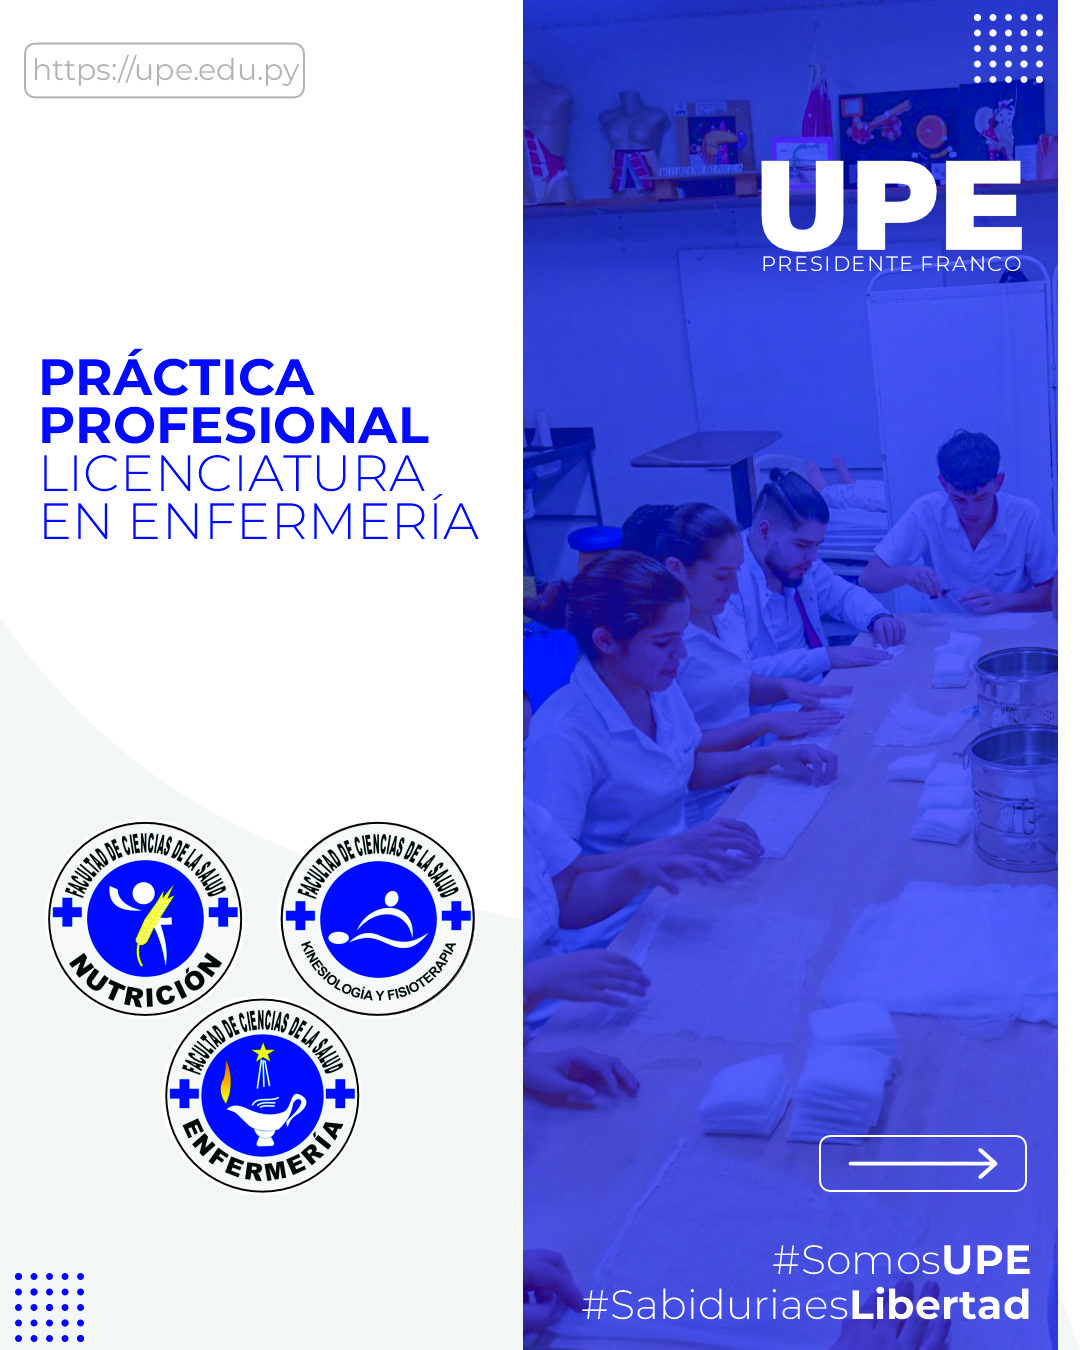 Práctica Profesional de Enfermería en la UPE 